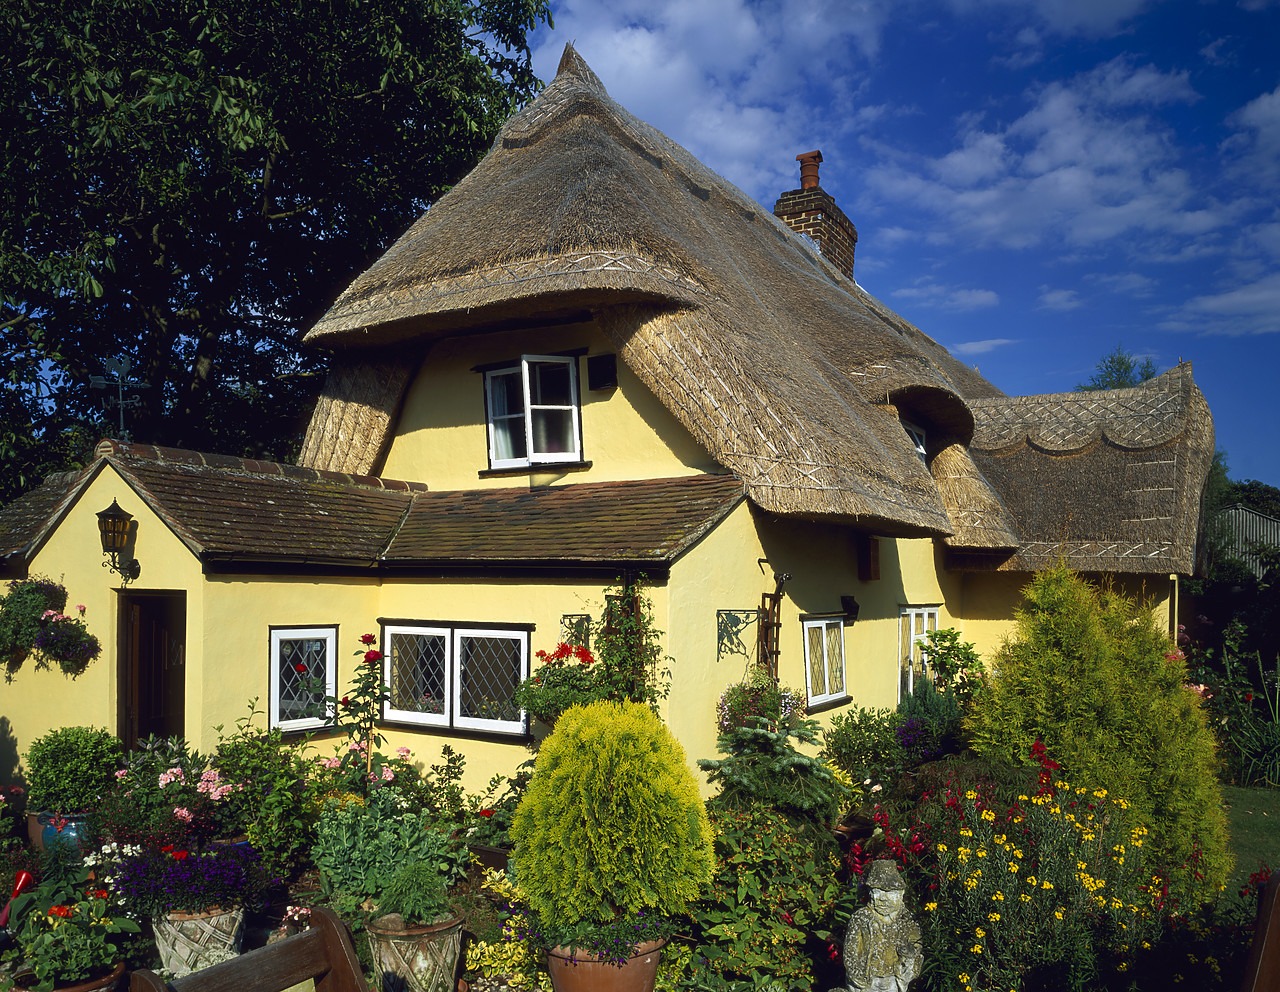 #040158-1 - Thatched Cottage & Garden, Essex, England